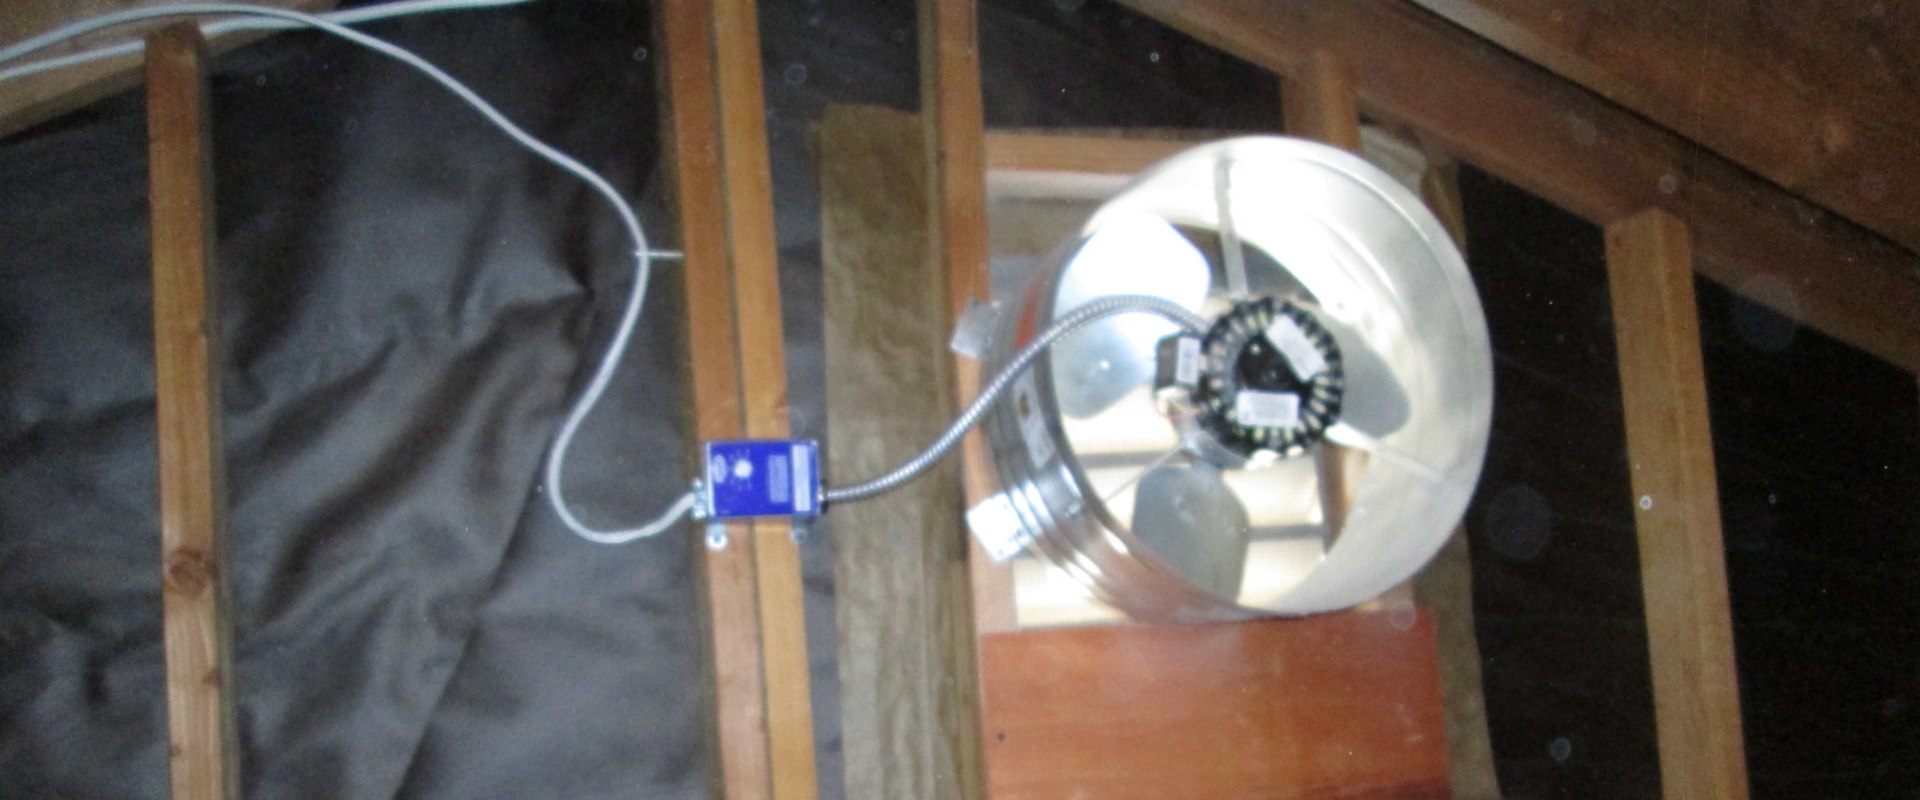 When should you use an attic fan?